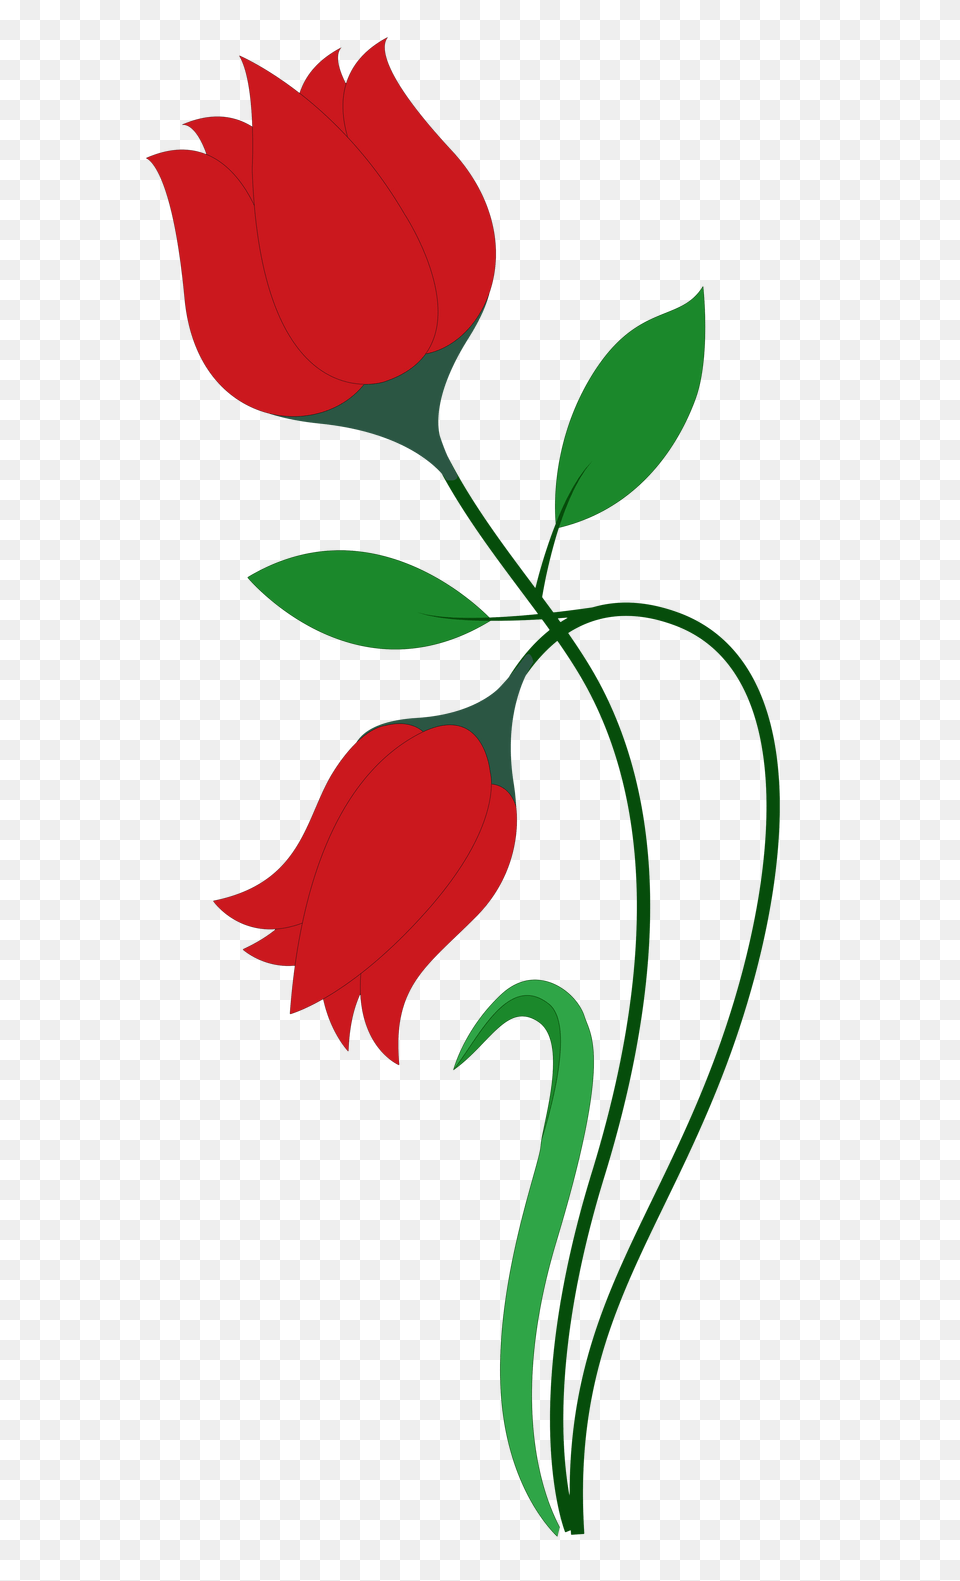 Rose Flower Vector Rose Flower Design Art, Plant, Graphics, Pattern, Floral Design Free Transparent Png